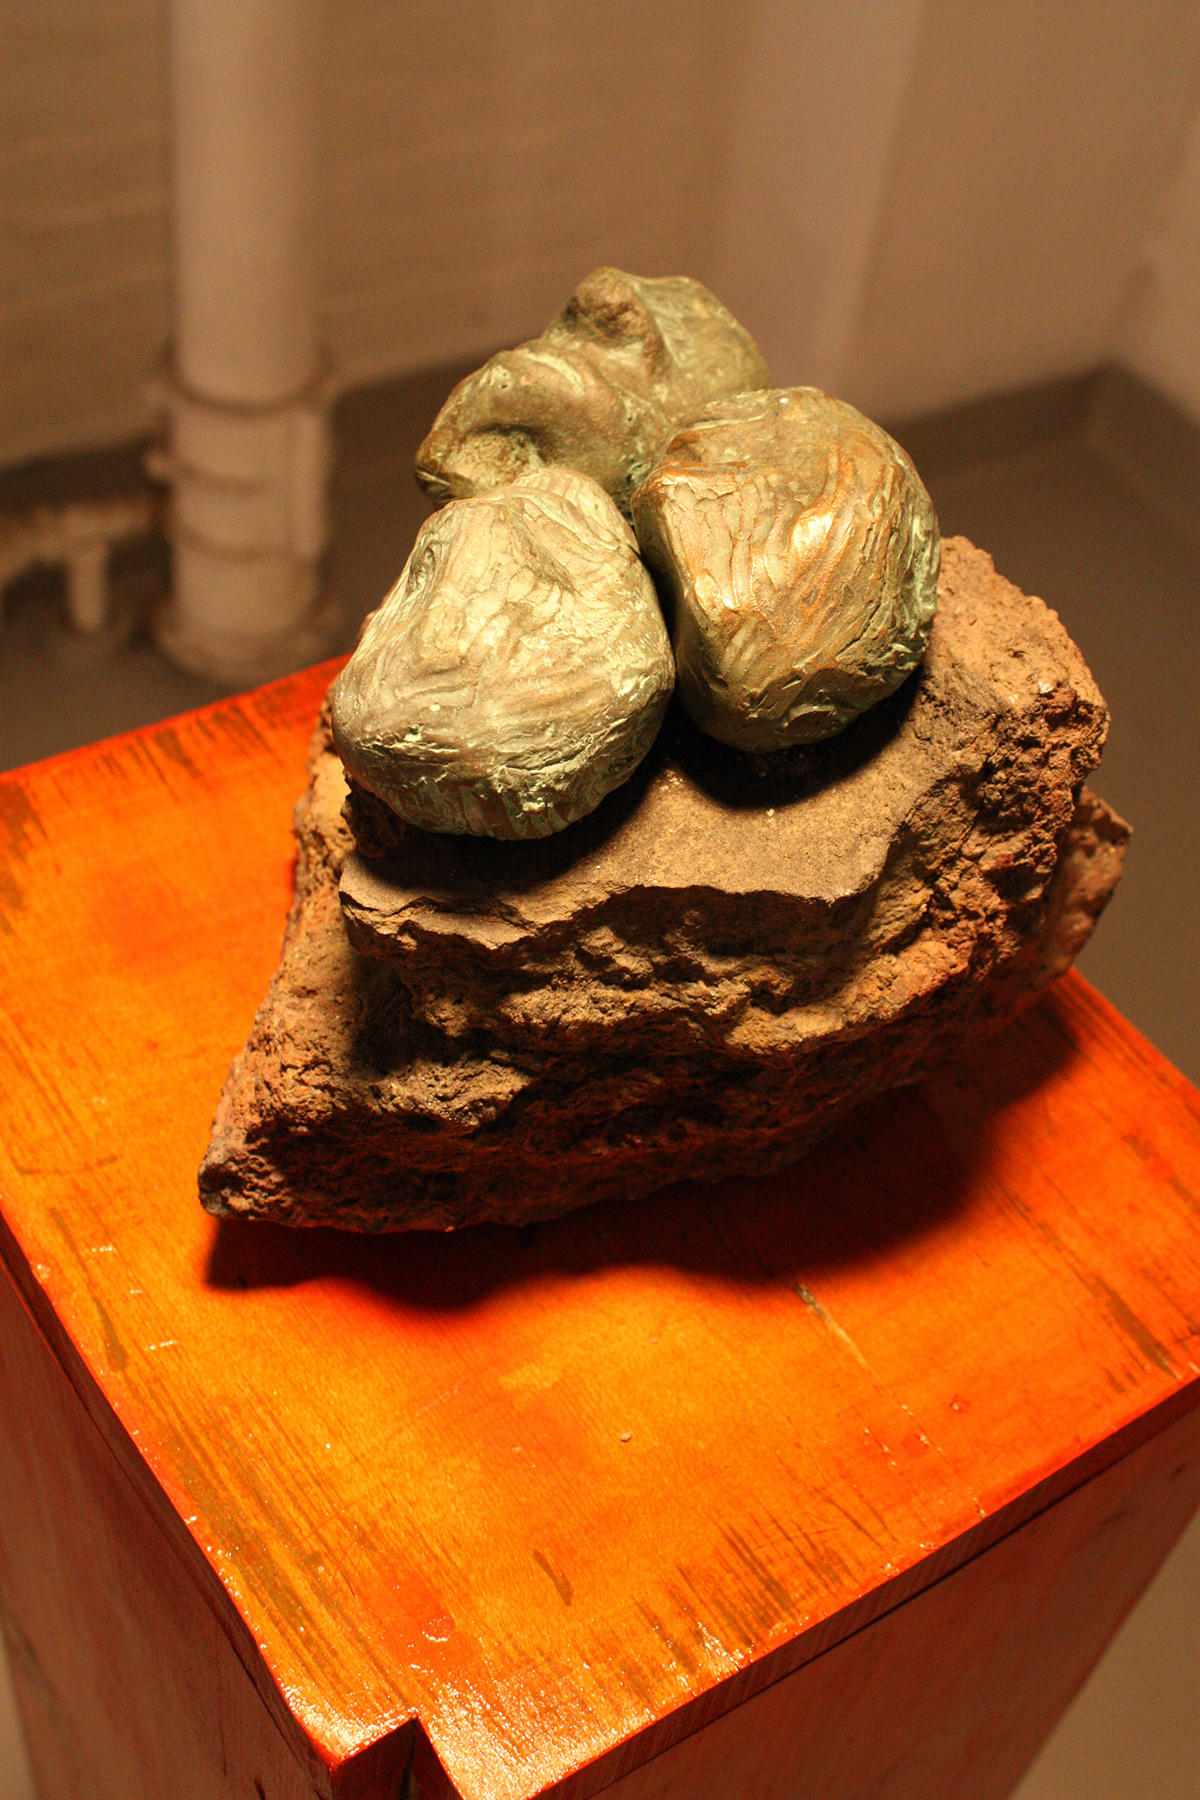 Senior Show bronze found object pedestal